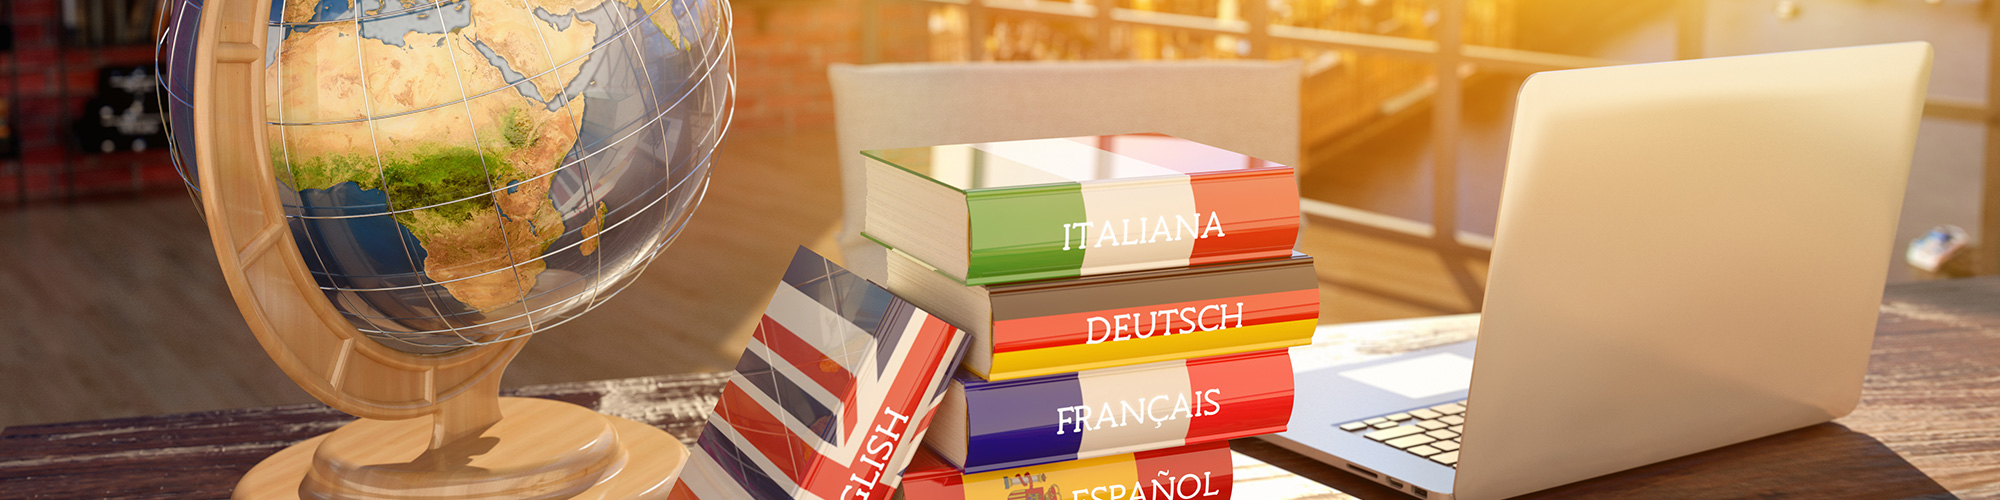 Globus, sechs Wörterbücher und Laptop auf Holztisch in Loft